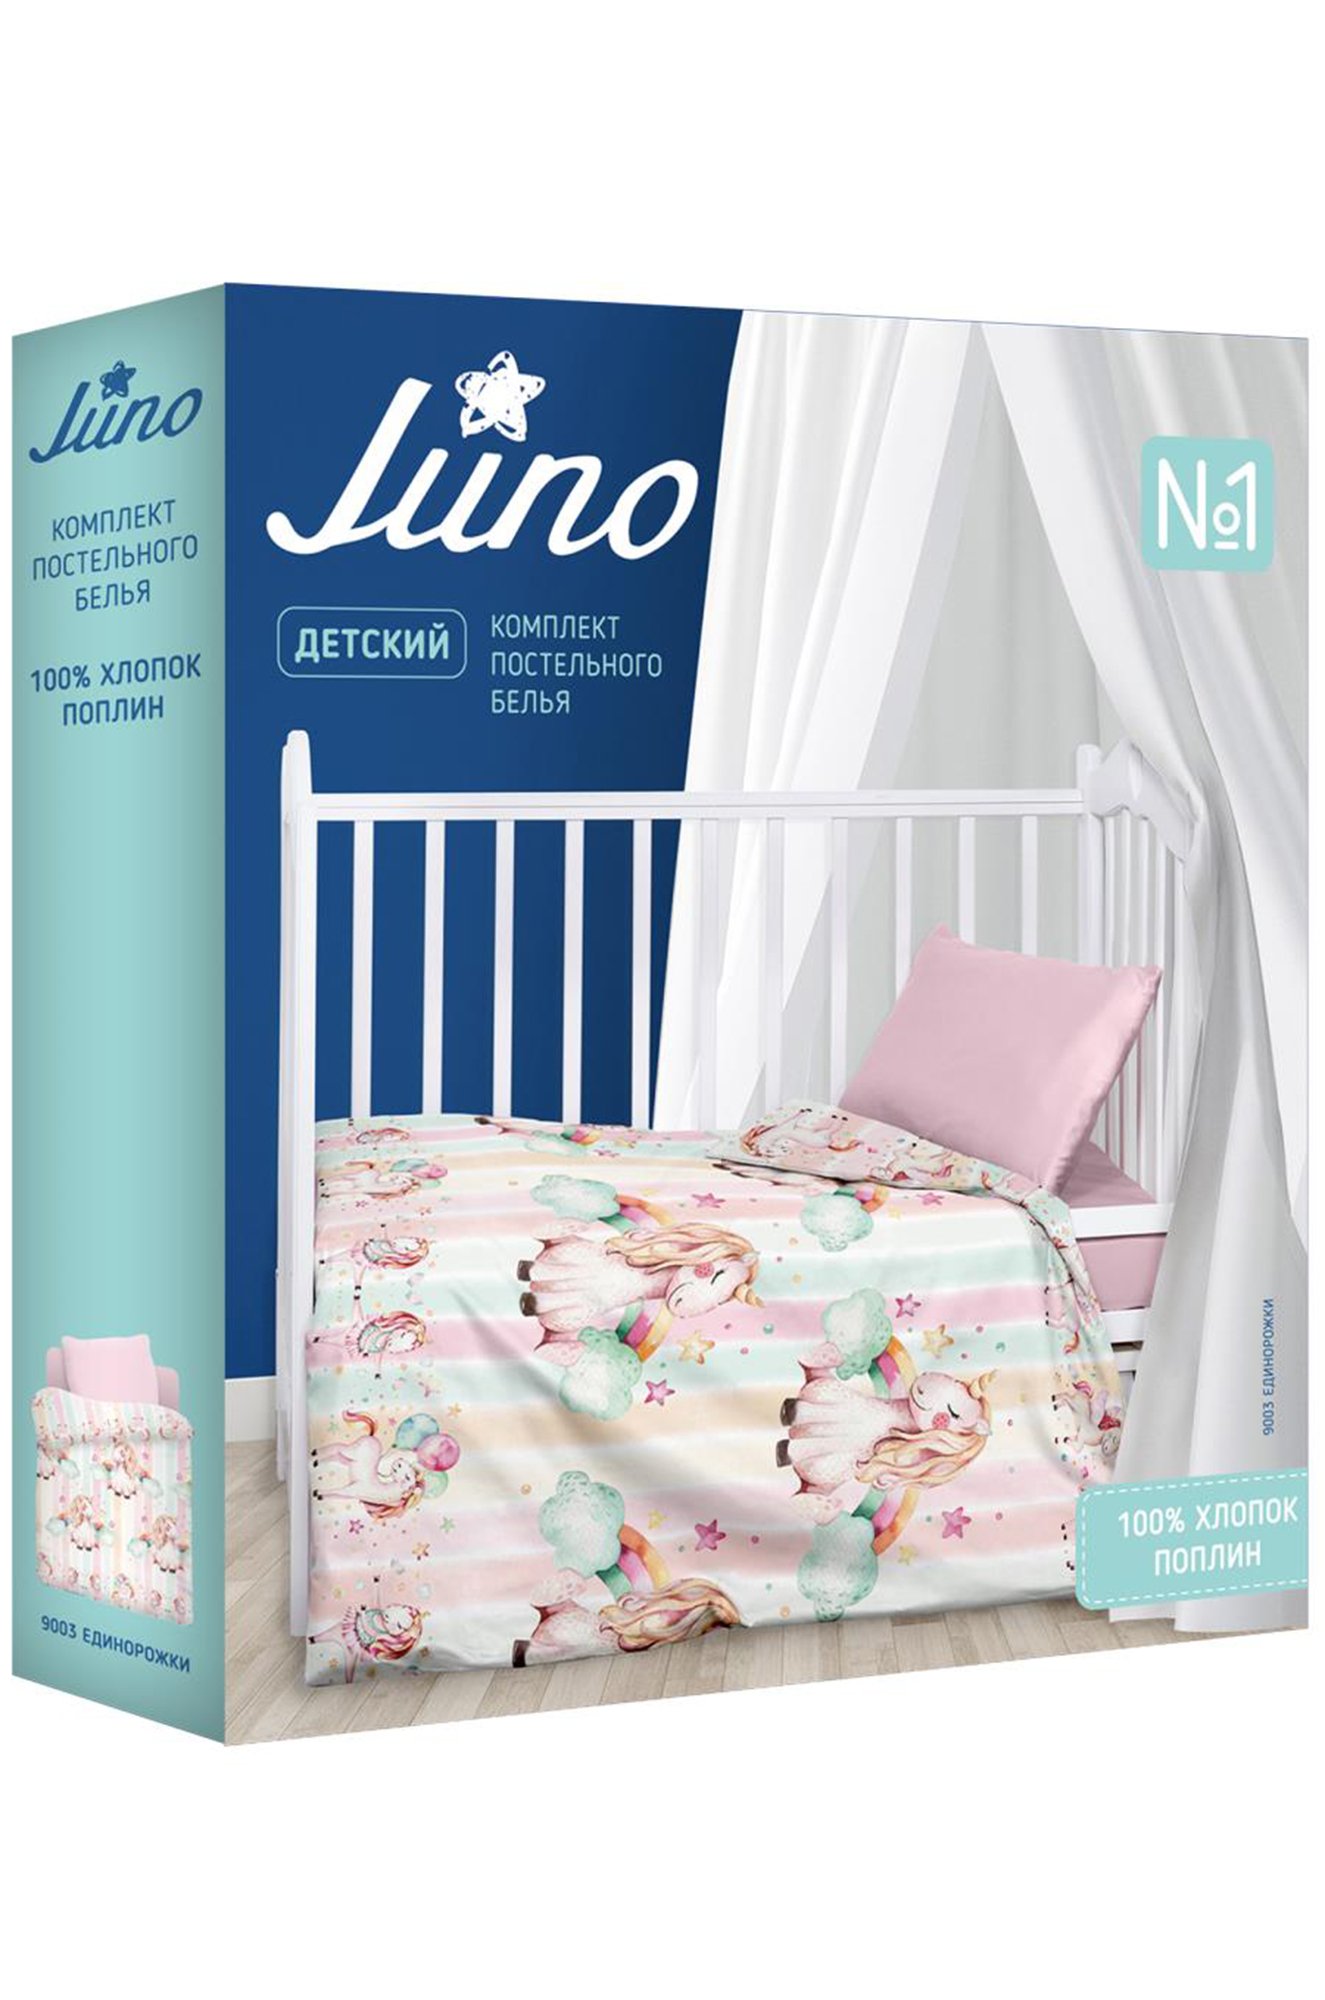 Детское постельное белье из поплина, ясельный, наволочки 40x60 Juno